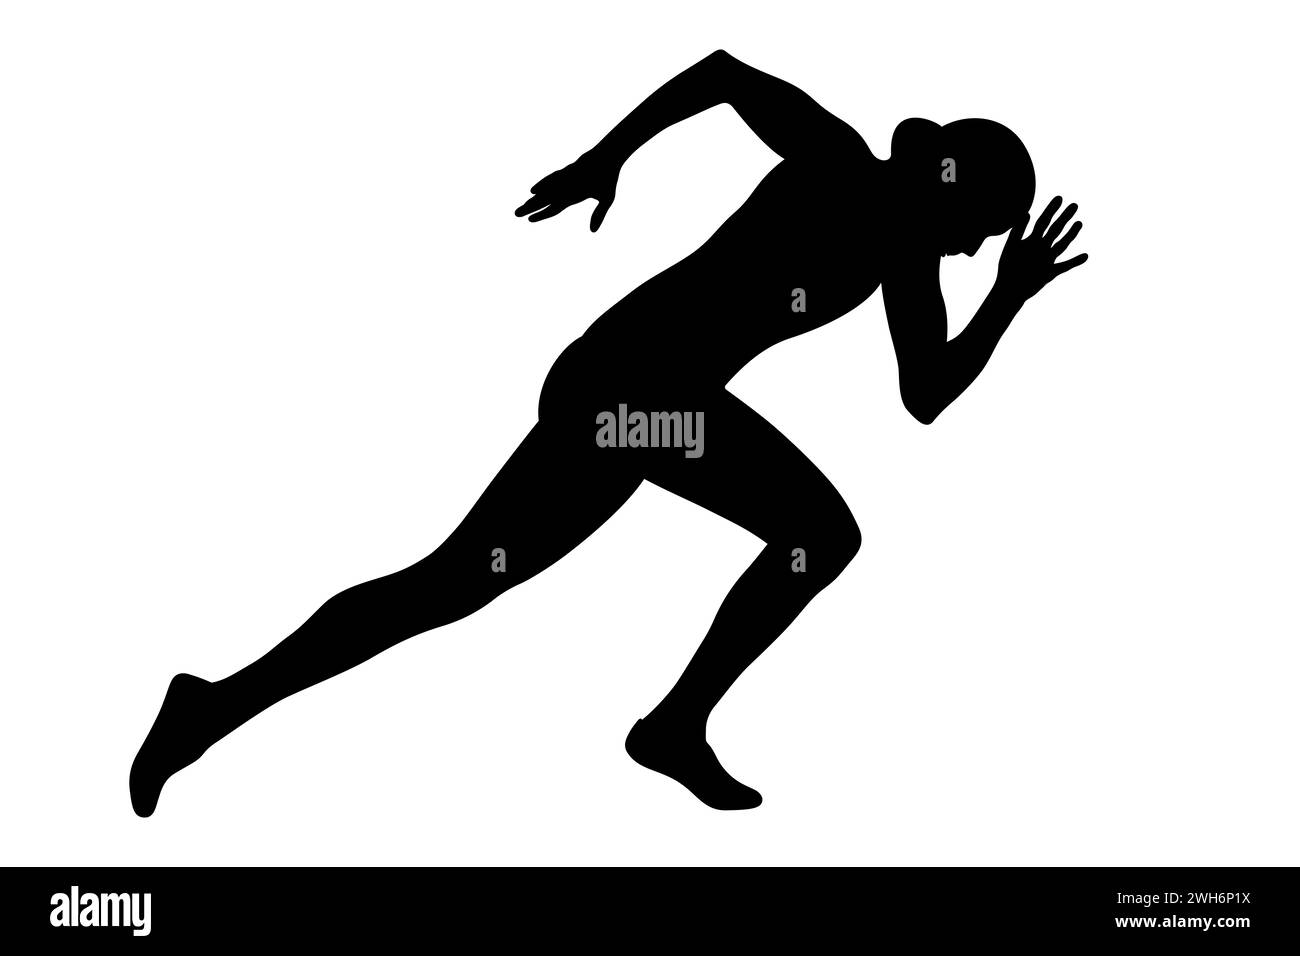 athlète féminine au début de la course de sprint, mettant en valeur la puissance et la détermination, silhouette noire sur fond blanc Banque D'Images